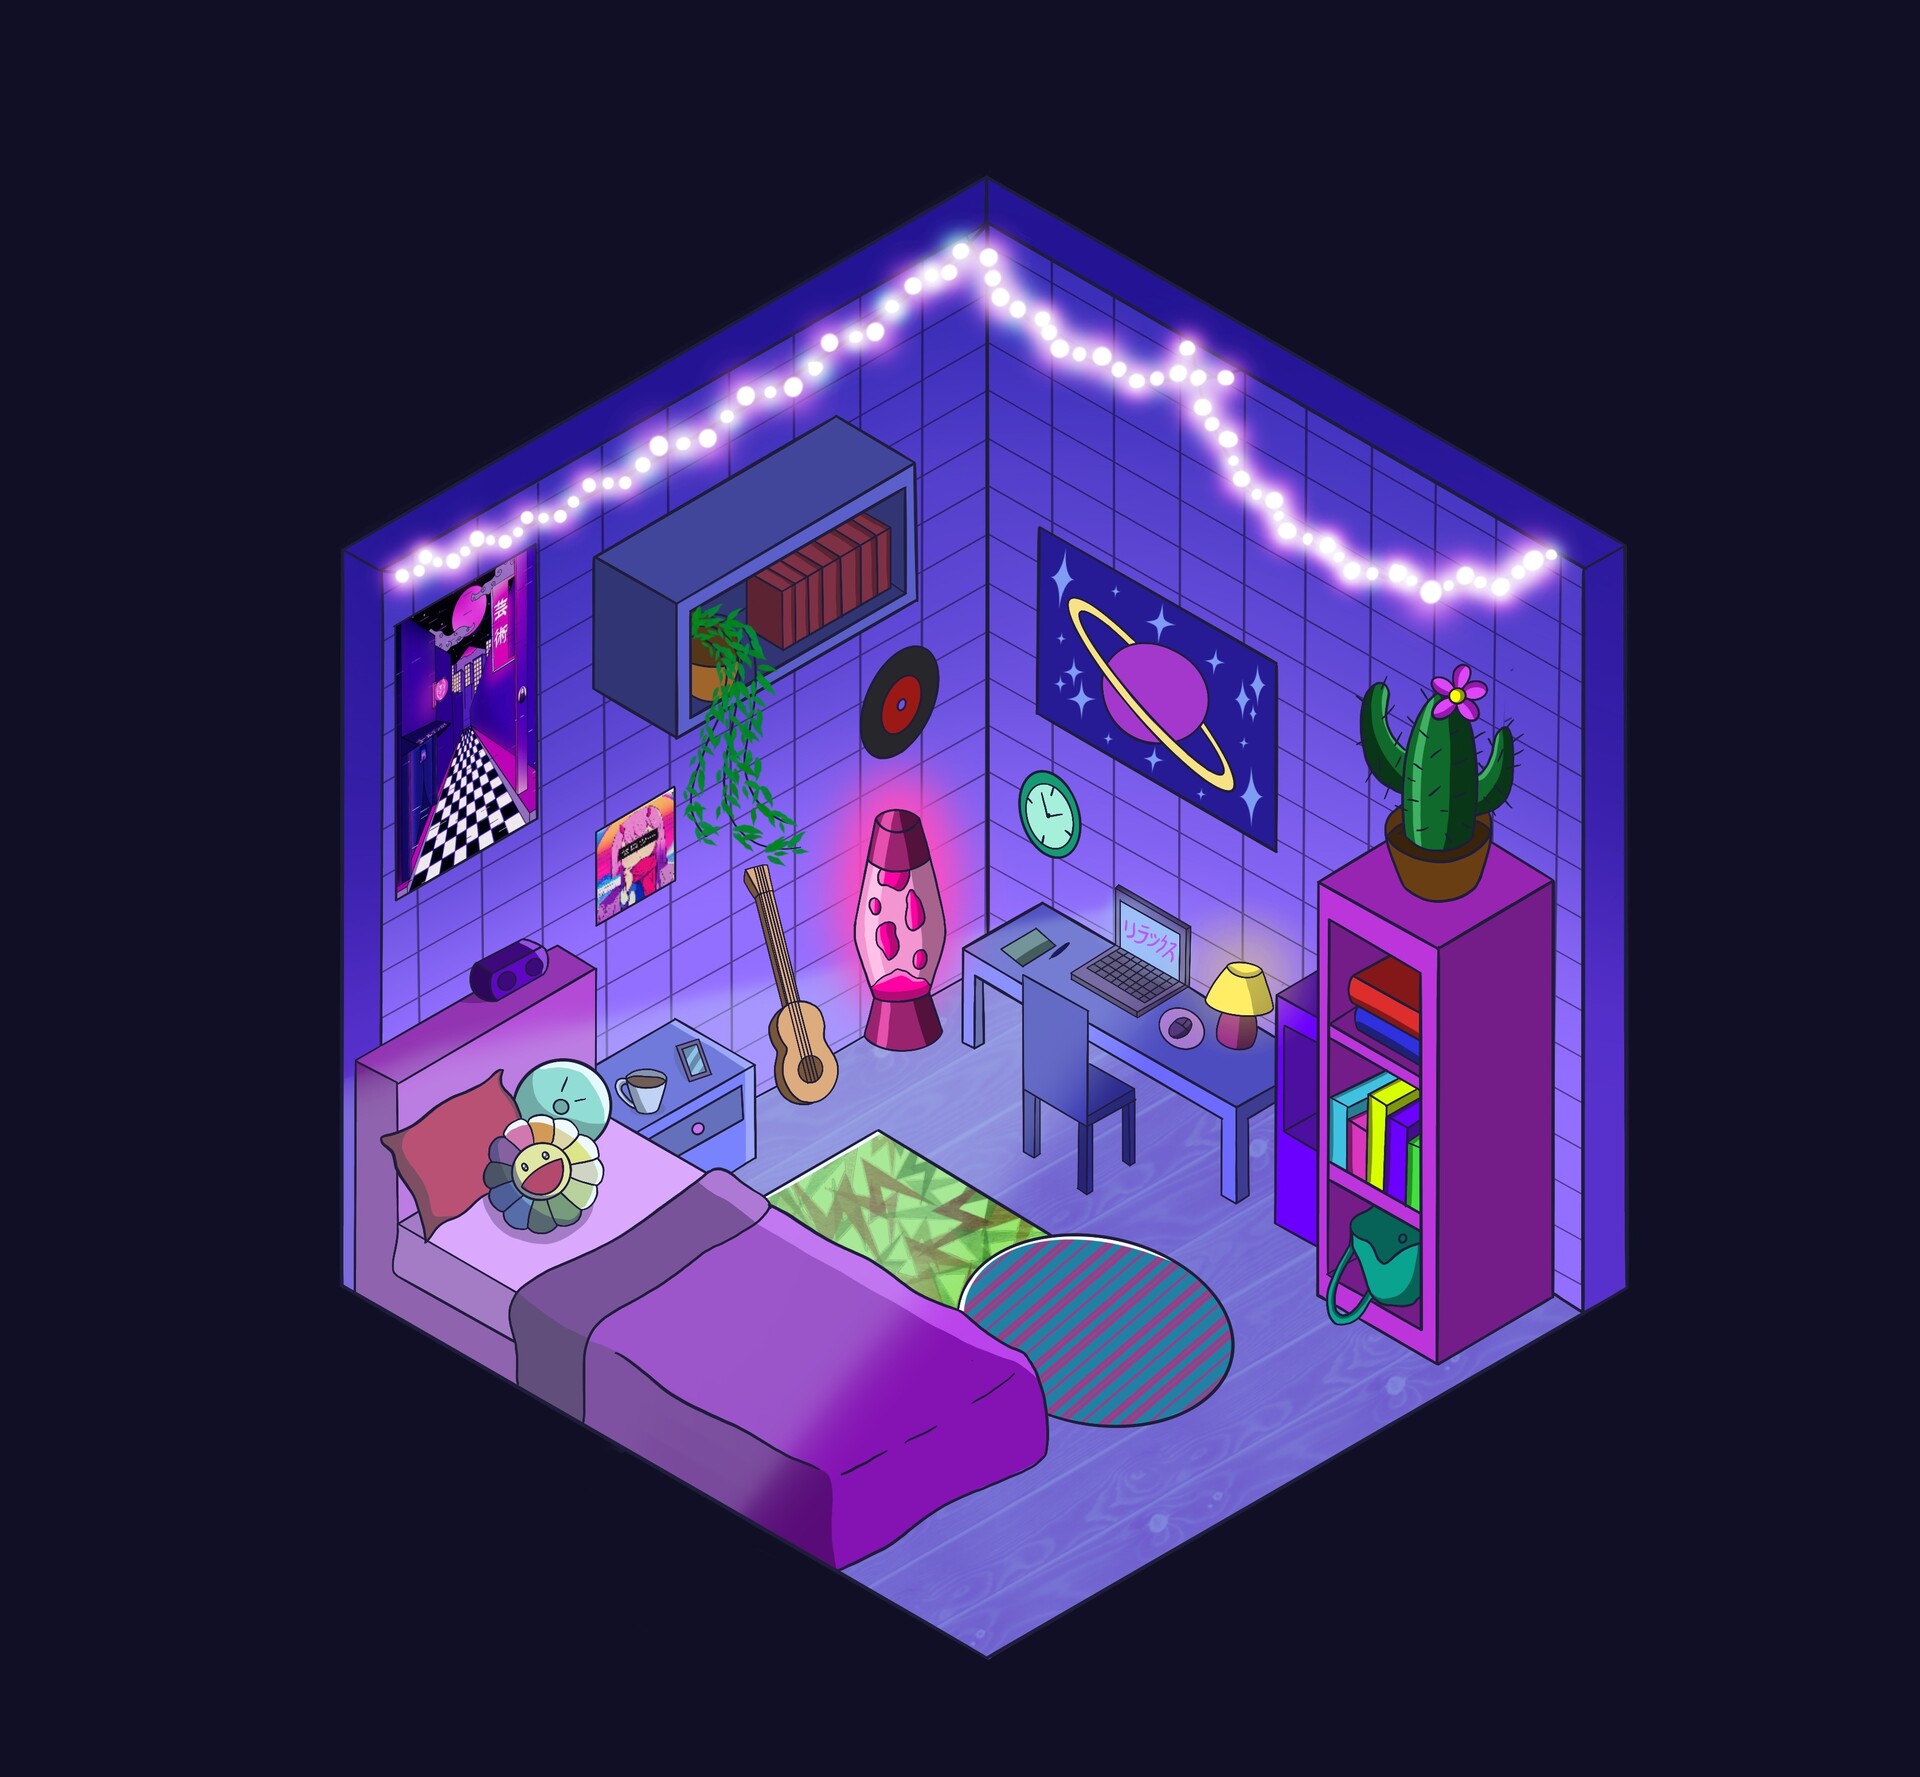 ArtStation - Isometric aesthetic bedroom